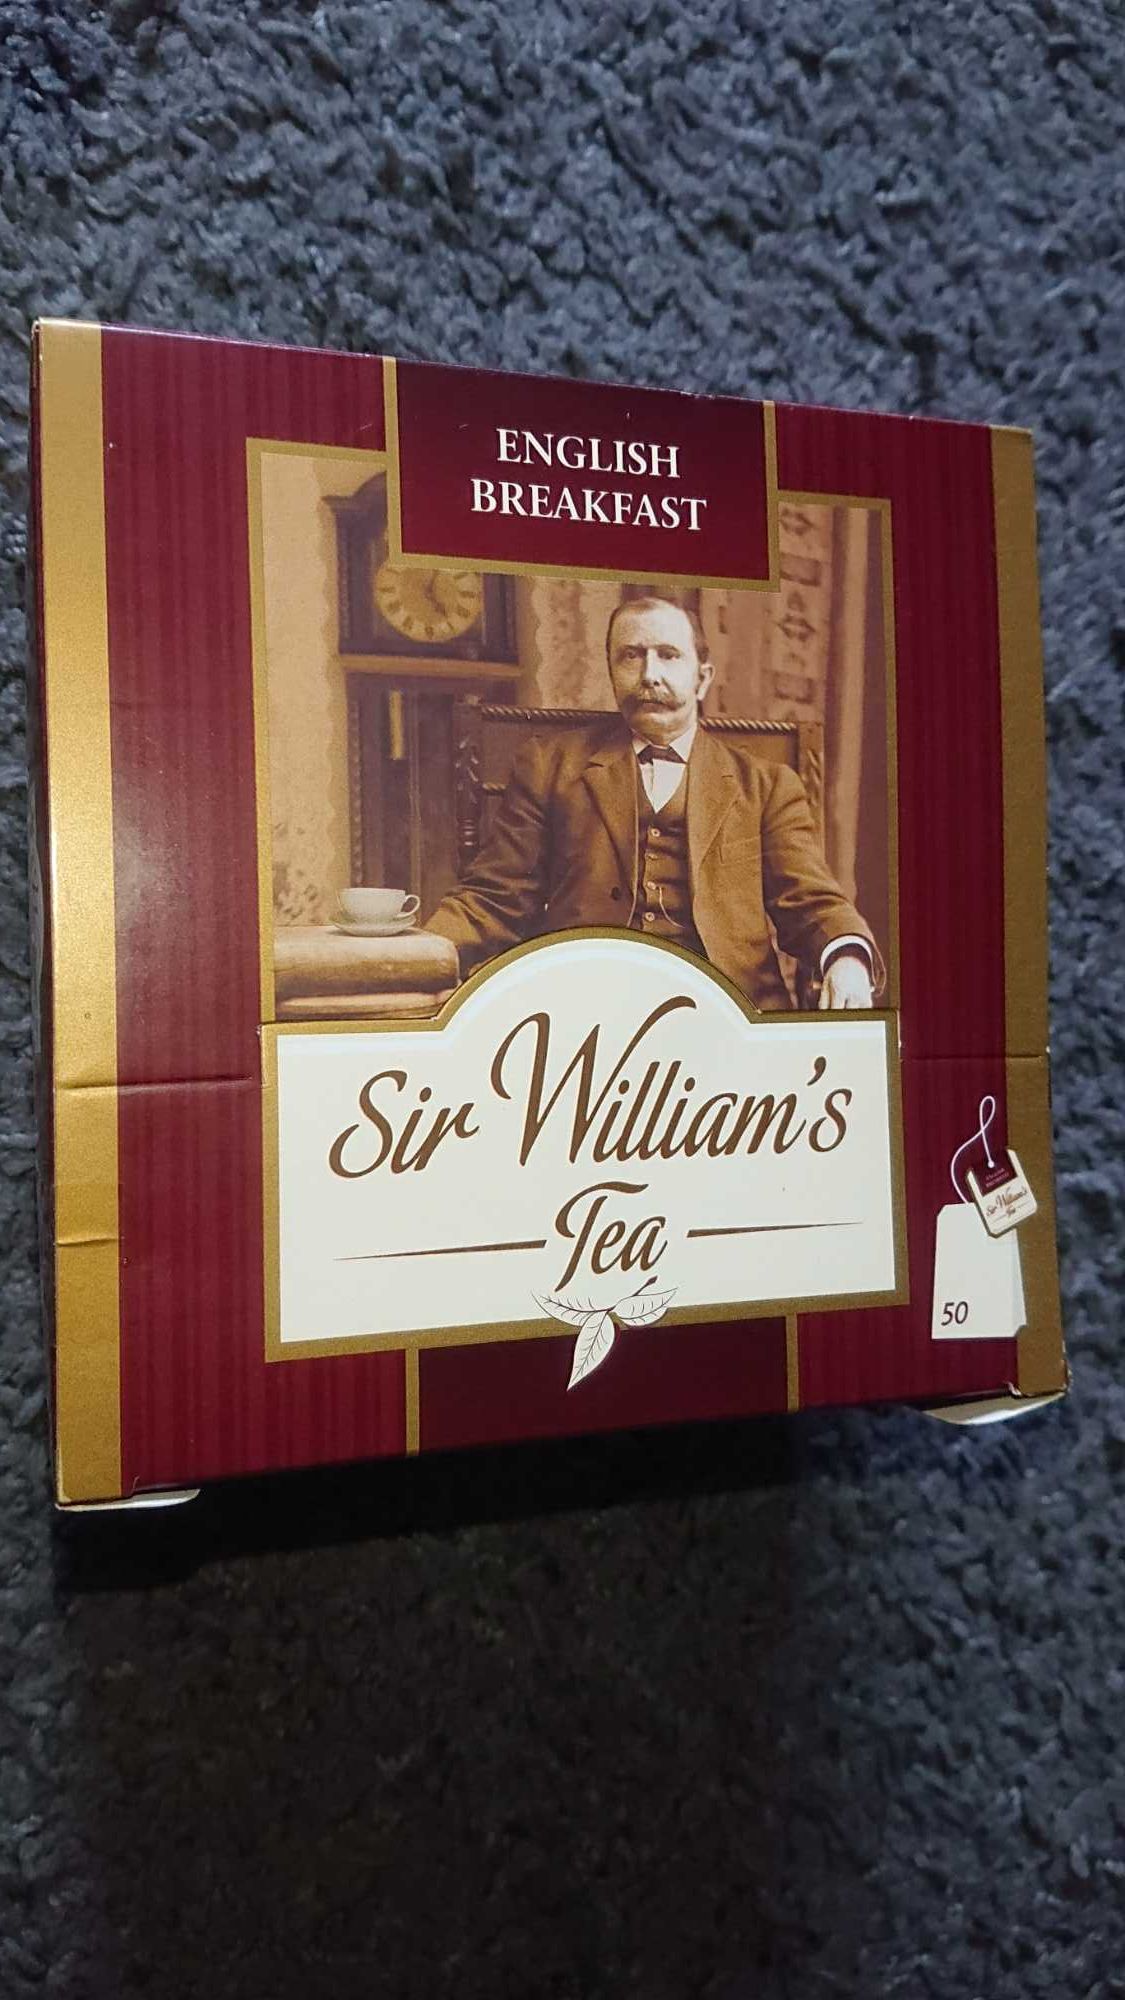 NOWA herbata Sir William's / English Breakfast / 50 torebek / 100g